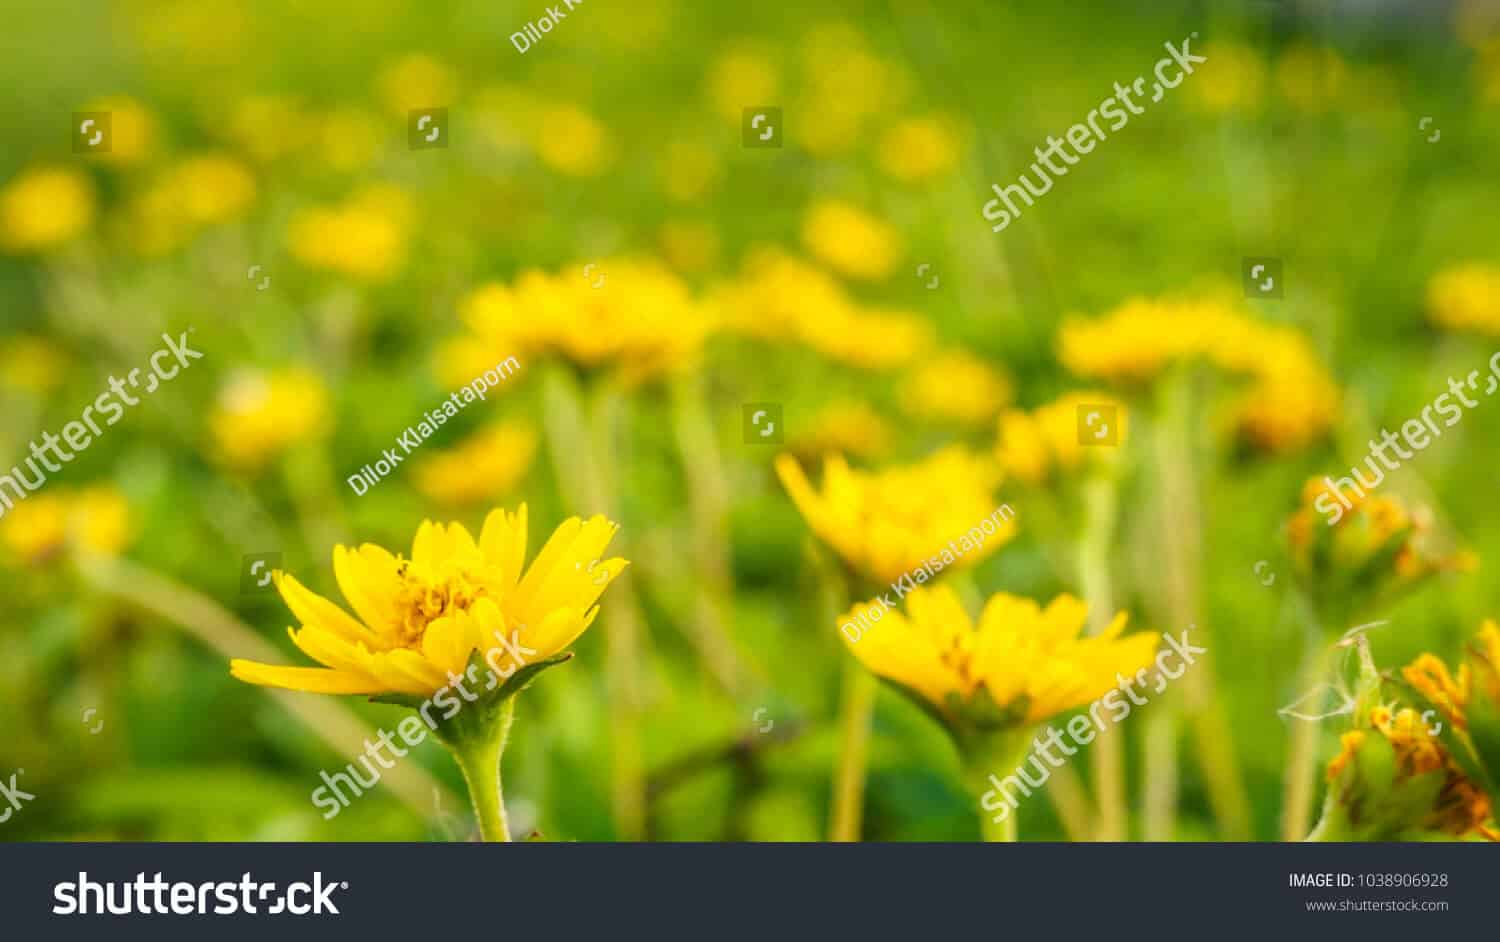 525 ngàn hình ảnh hoa cúc vàng chất lượng cao trên Shutterstock